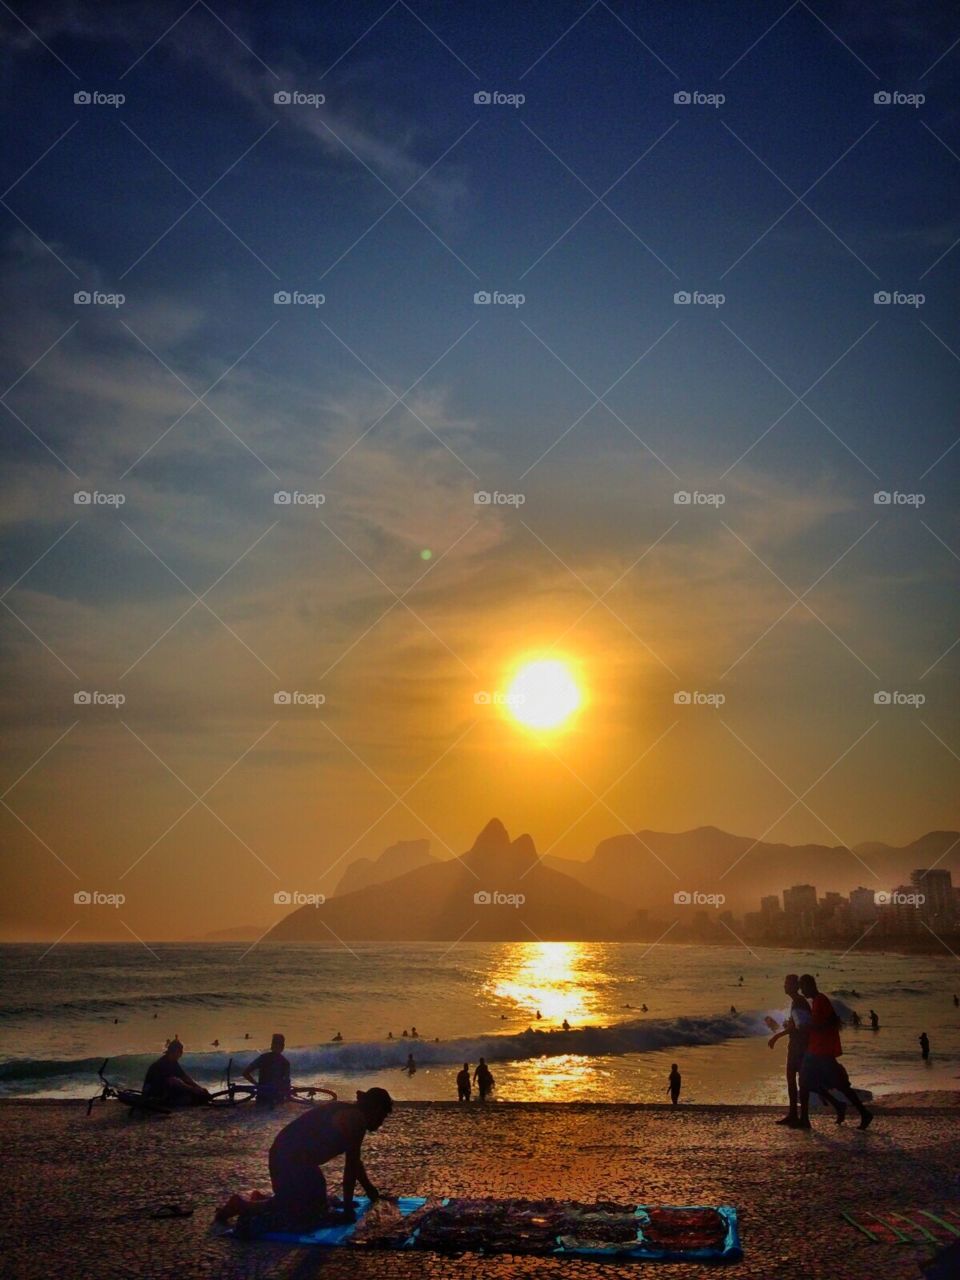 Sunset in Rio de Janeiro. Picture token at Ipanema Beach in Rio de Janeiro.